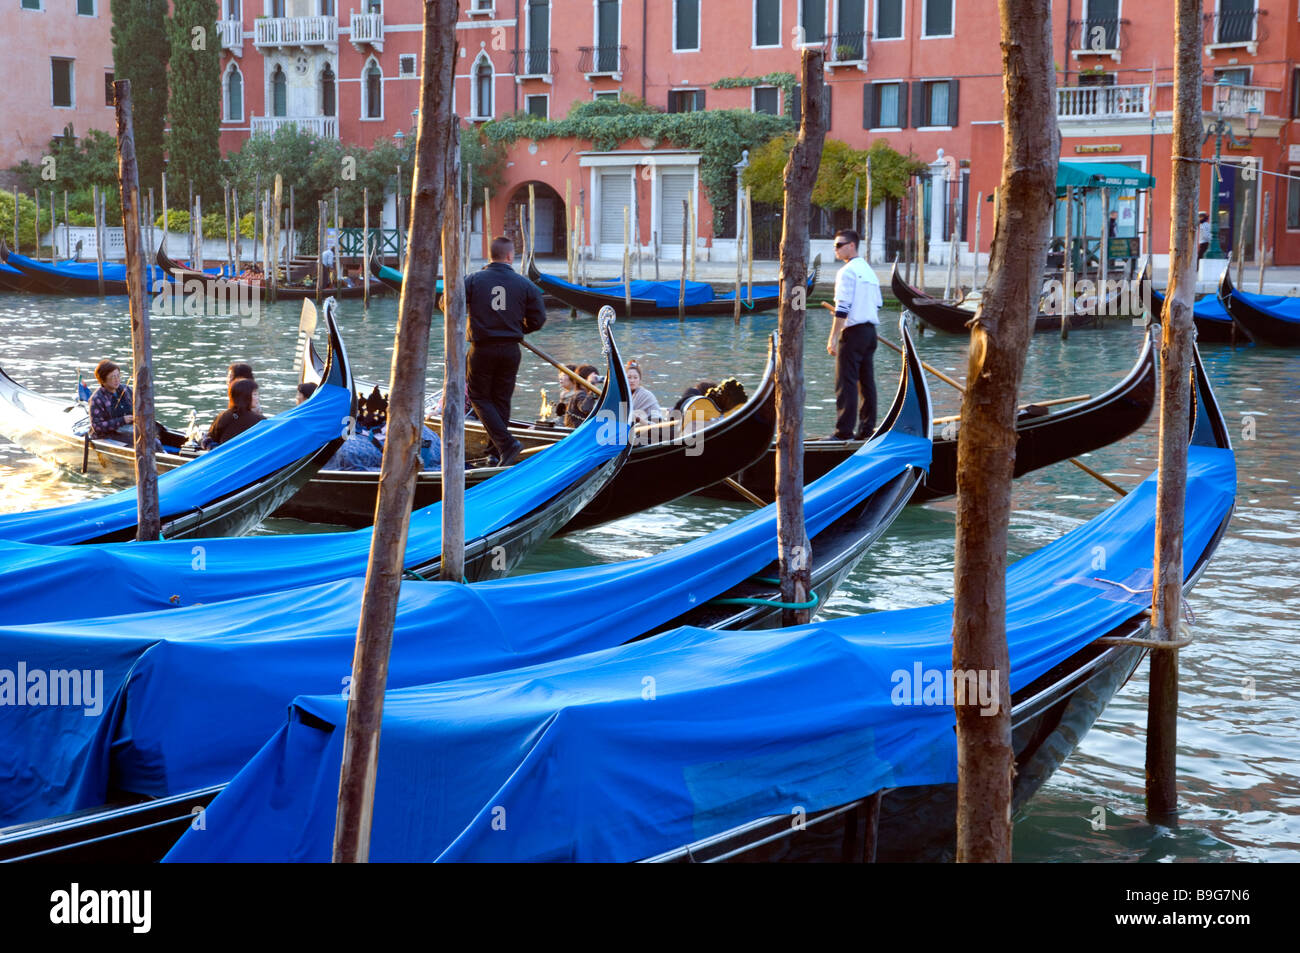 Le Grand Canal de Venise Italie avec architecture vénitienne bateaux et gondoles Banque D'Images